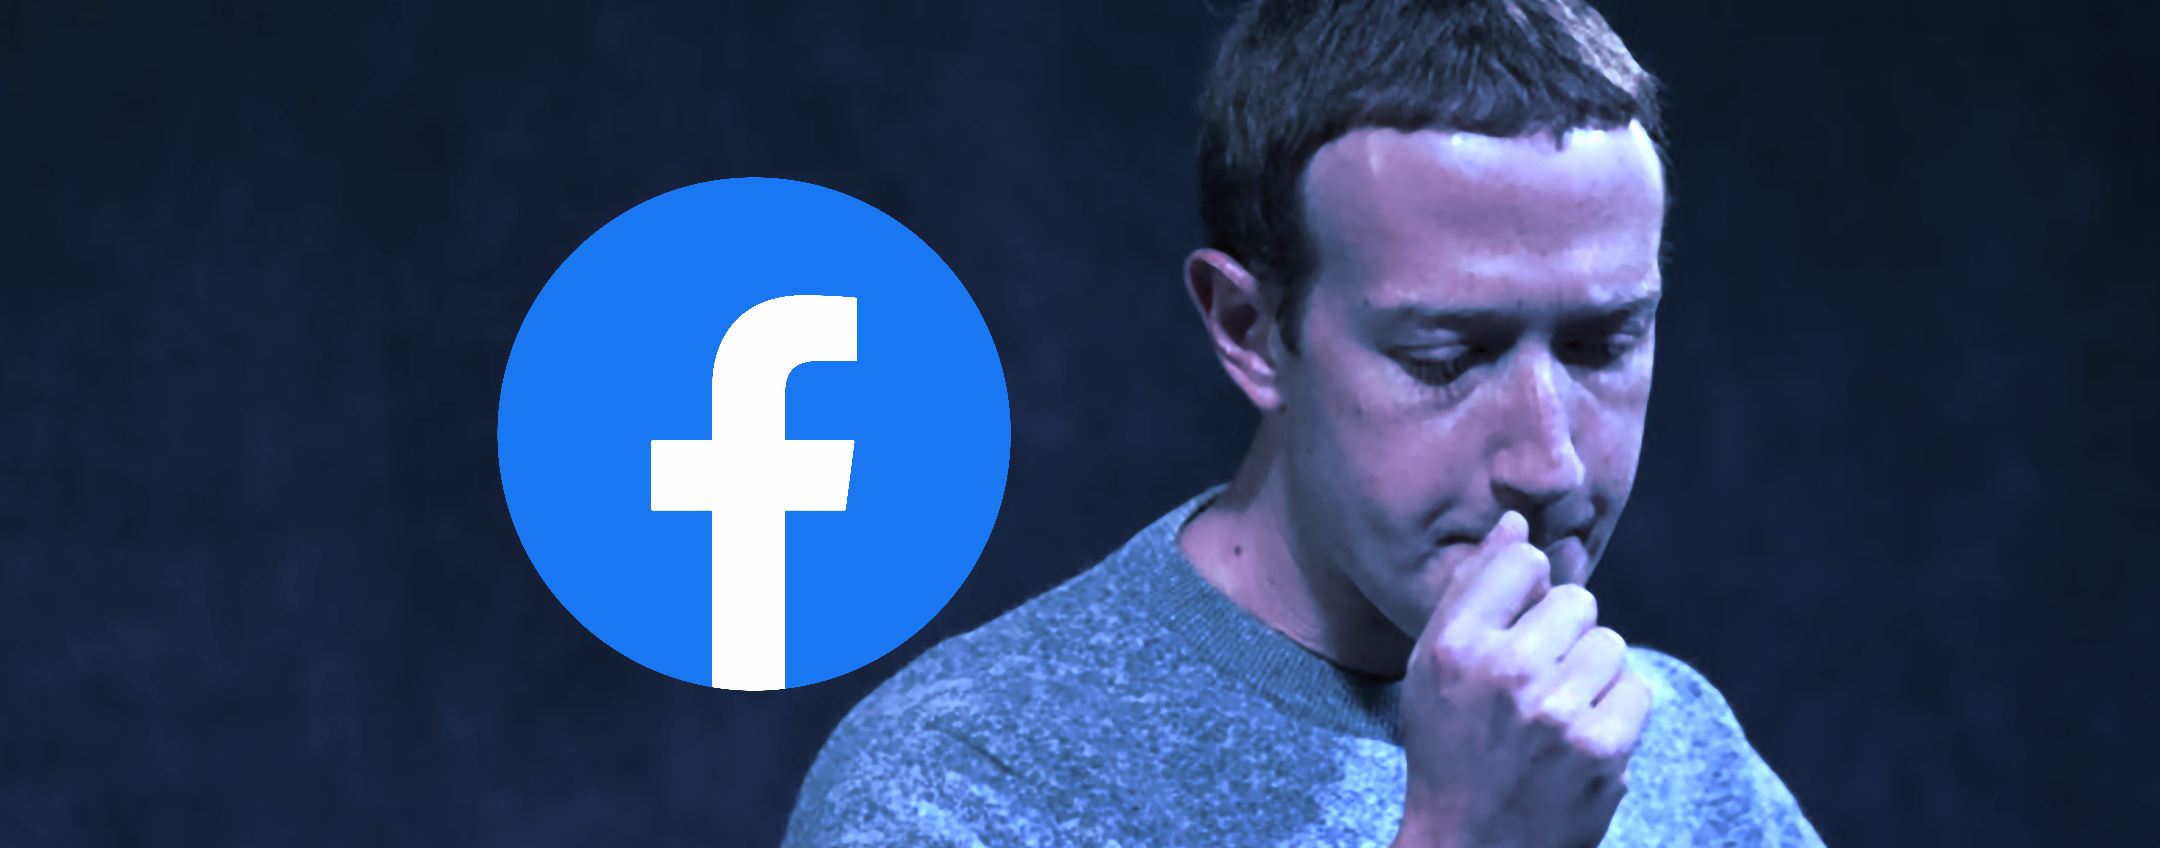 Facebook perde pubblico: non era mai successo prima d'ora